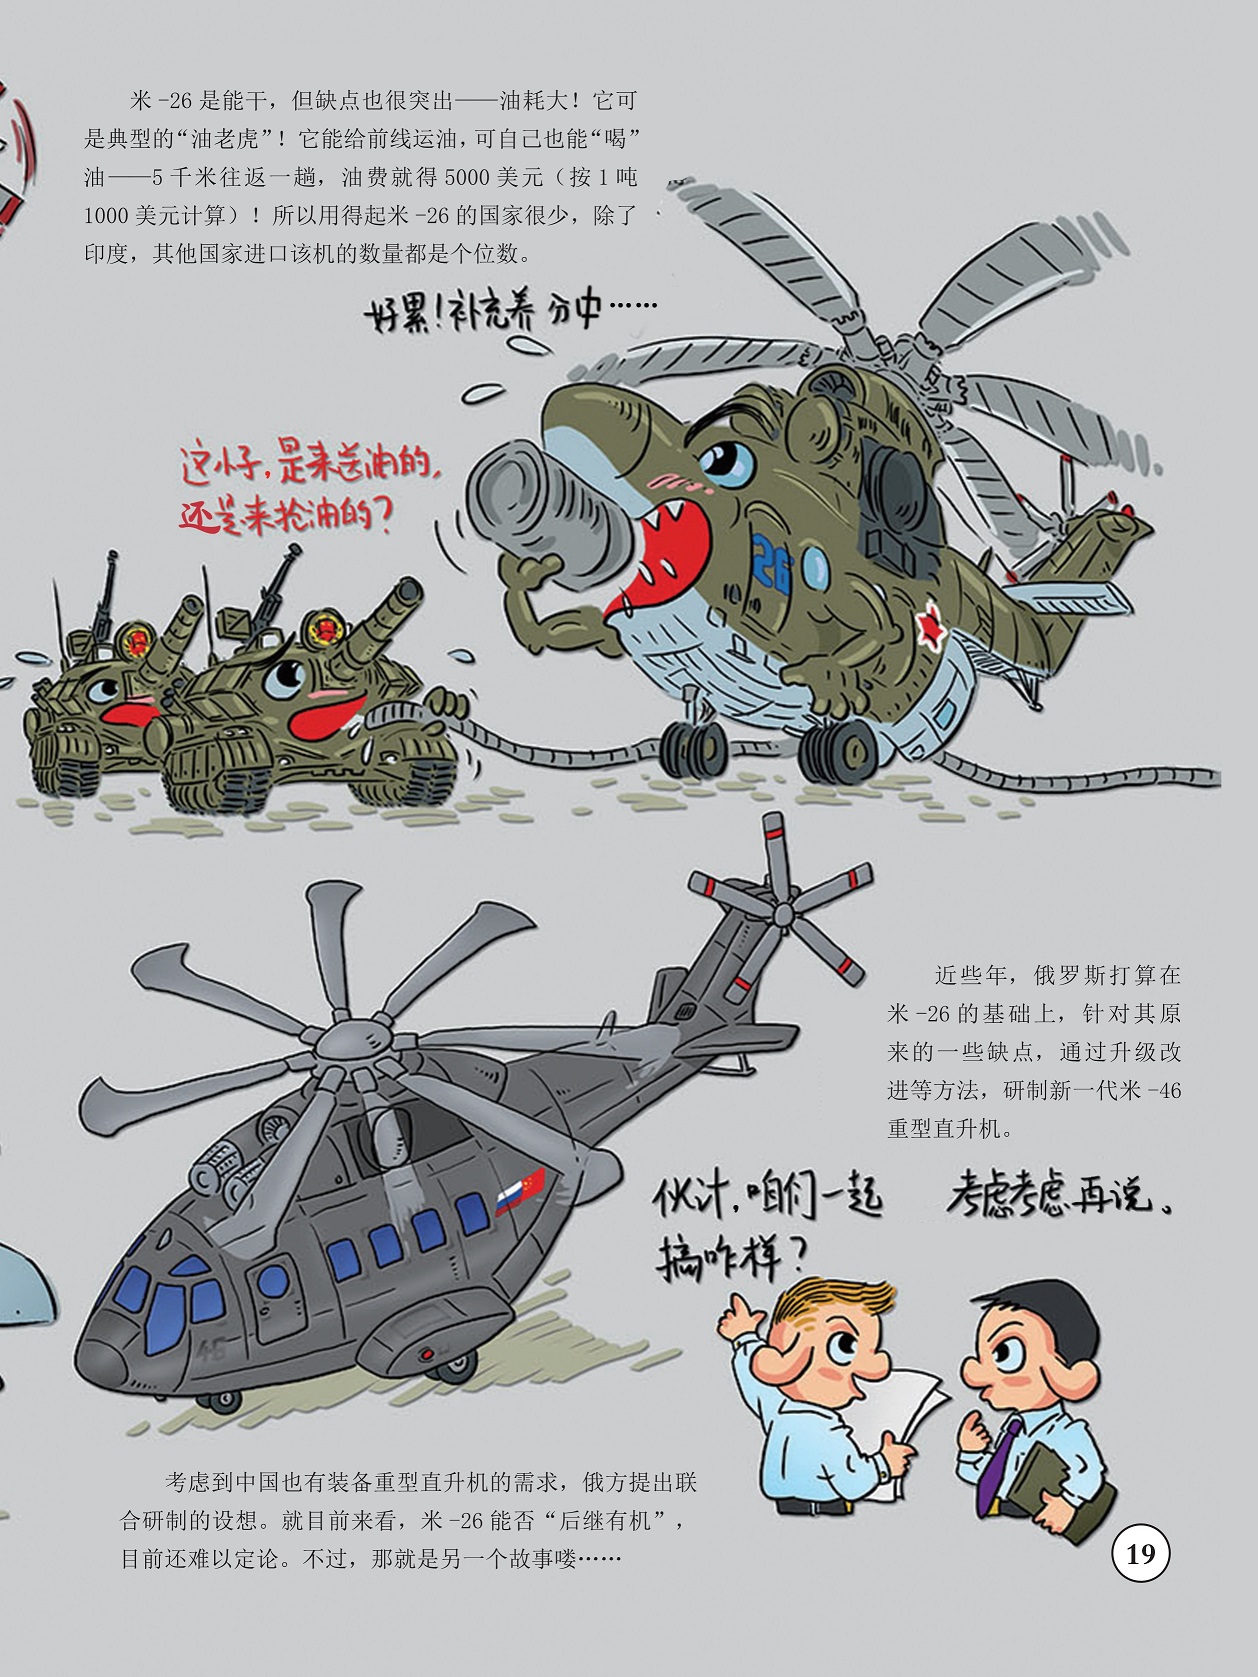 进口该机的数量较少,研制新一代米-46重型直升机